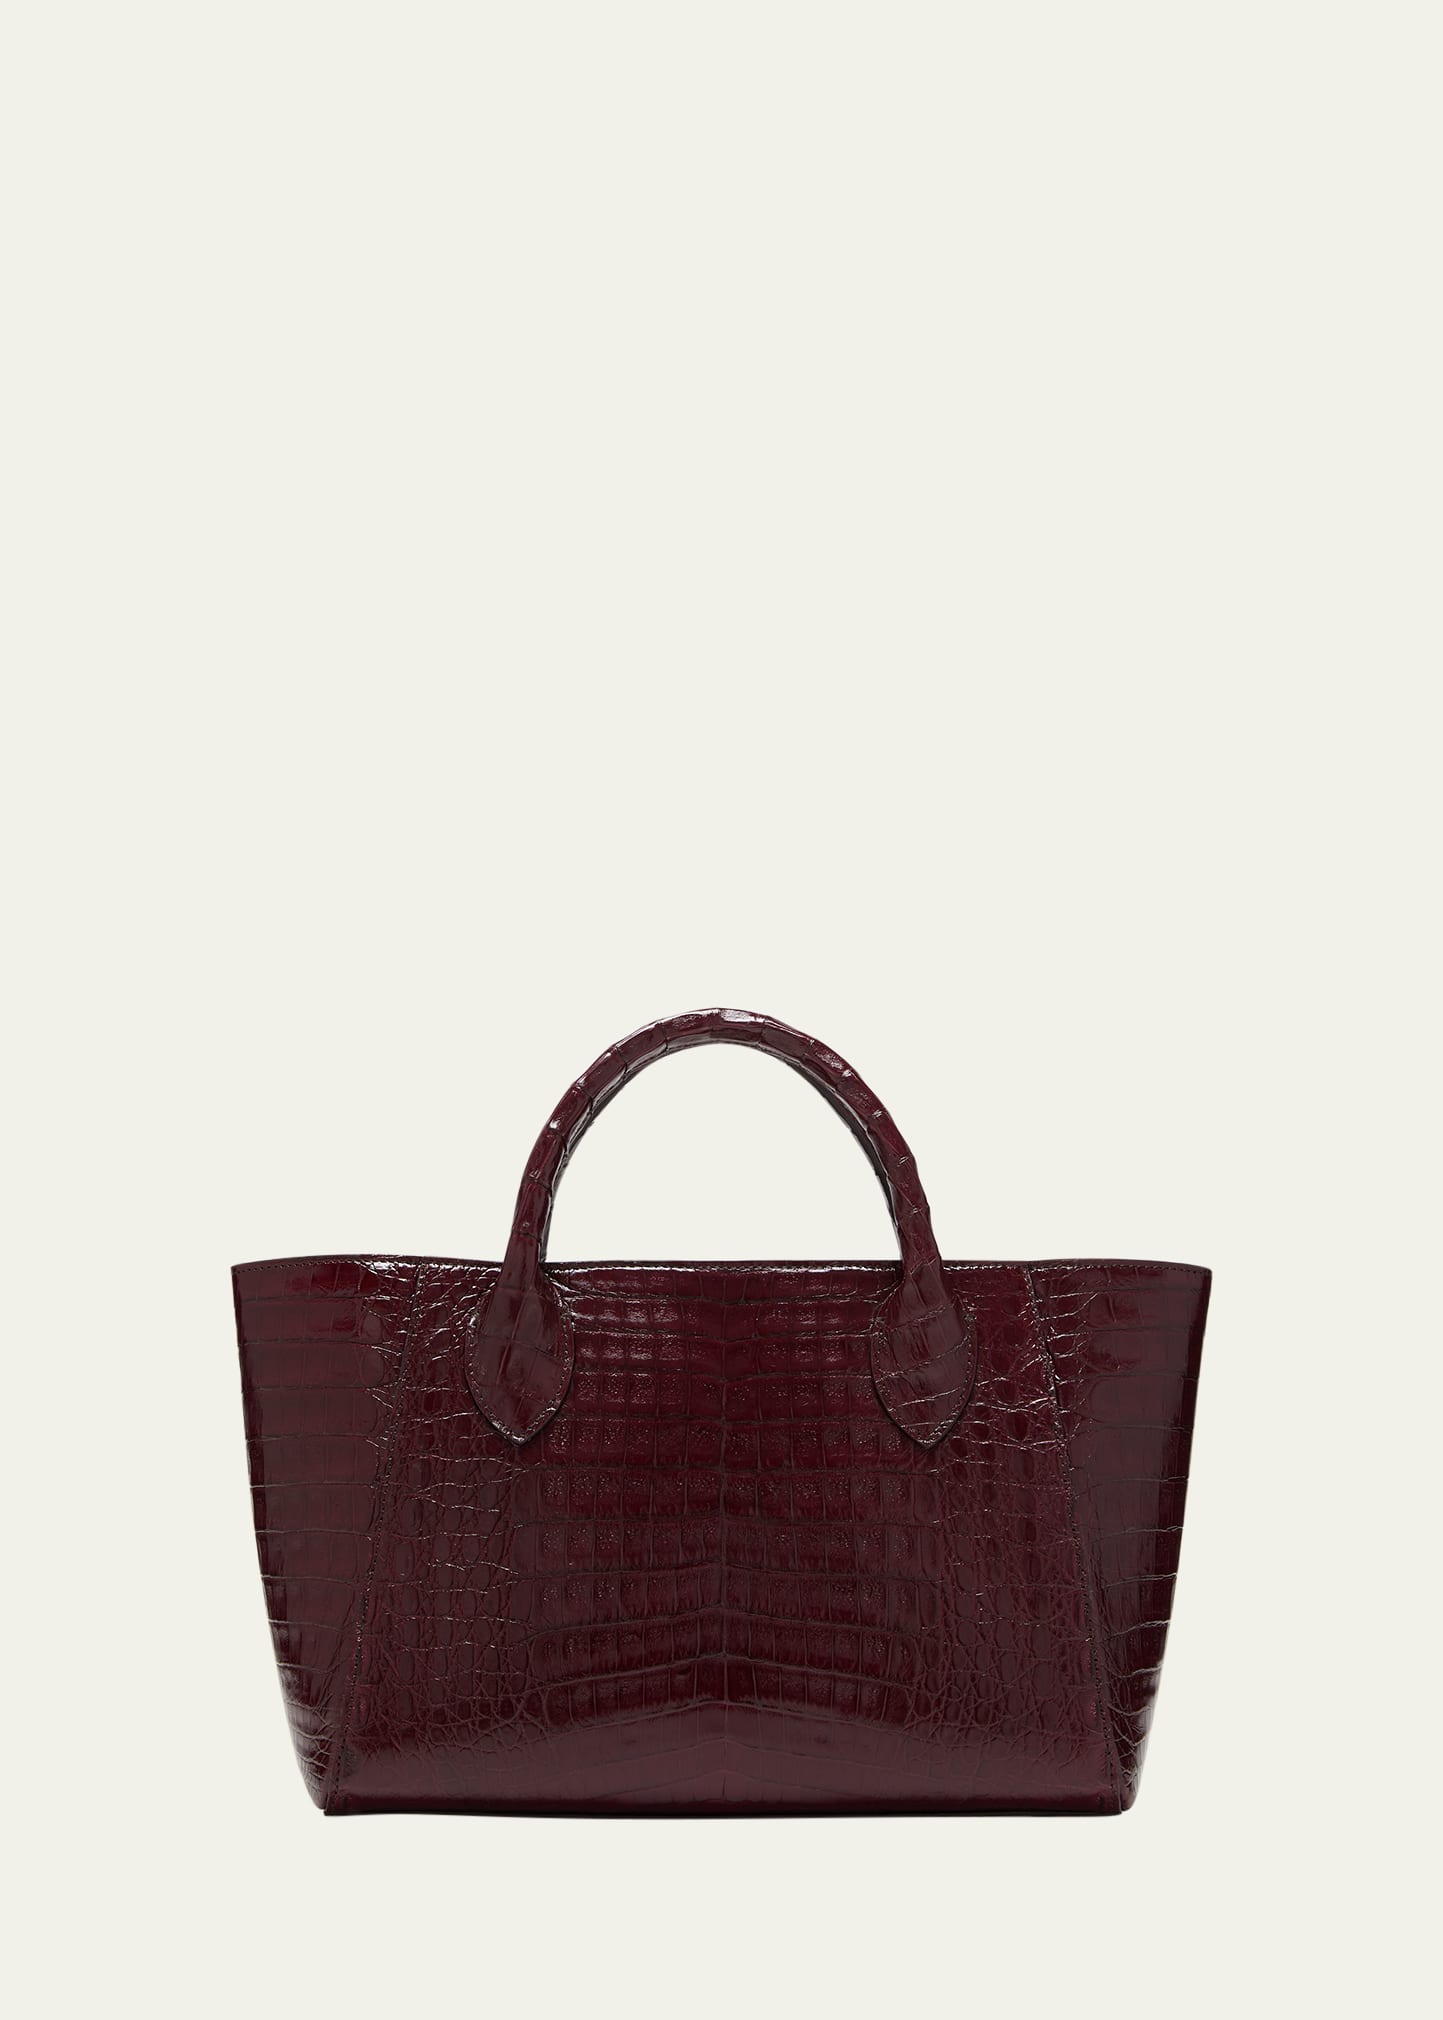 Brown drawstring bucket bag. Crocodile, Glazed, Gold. ALESSIA